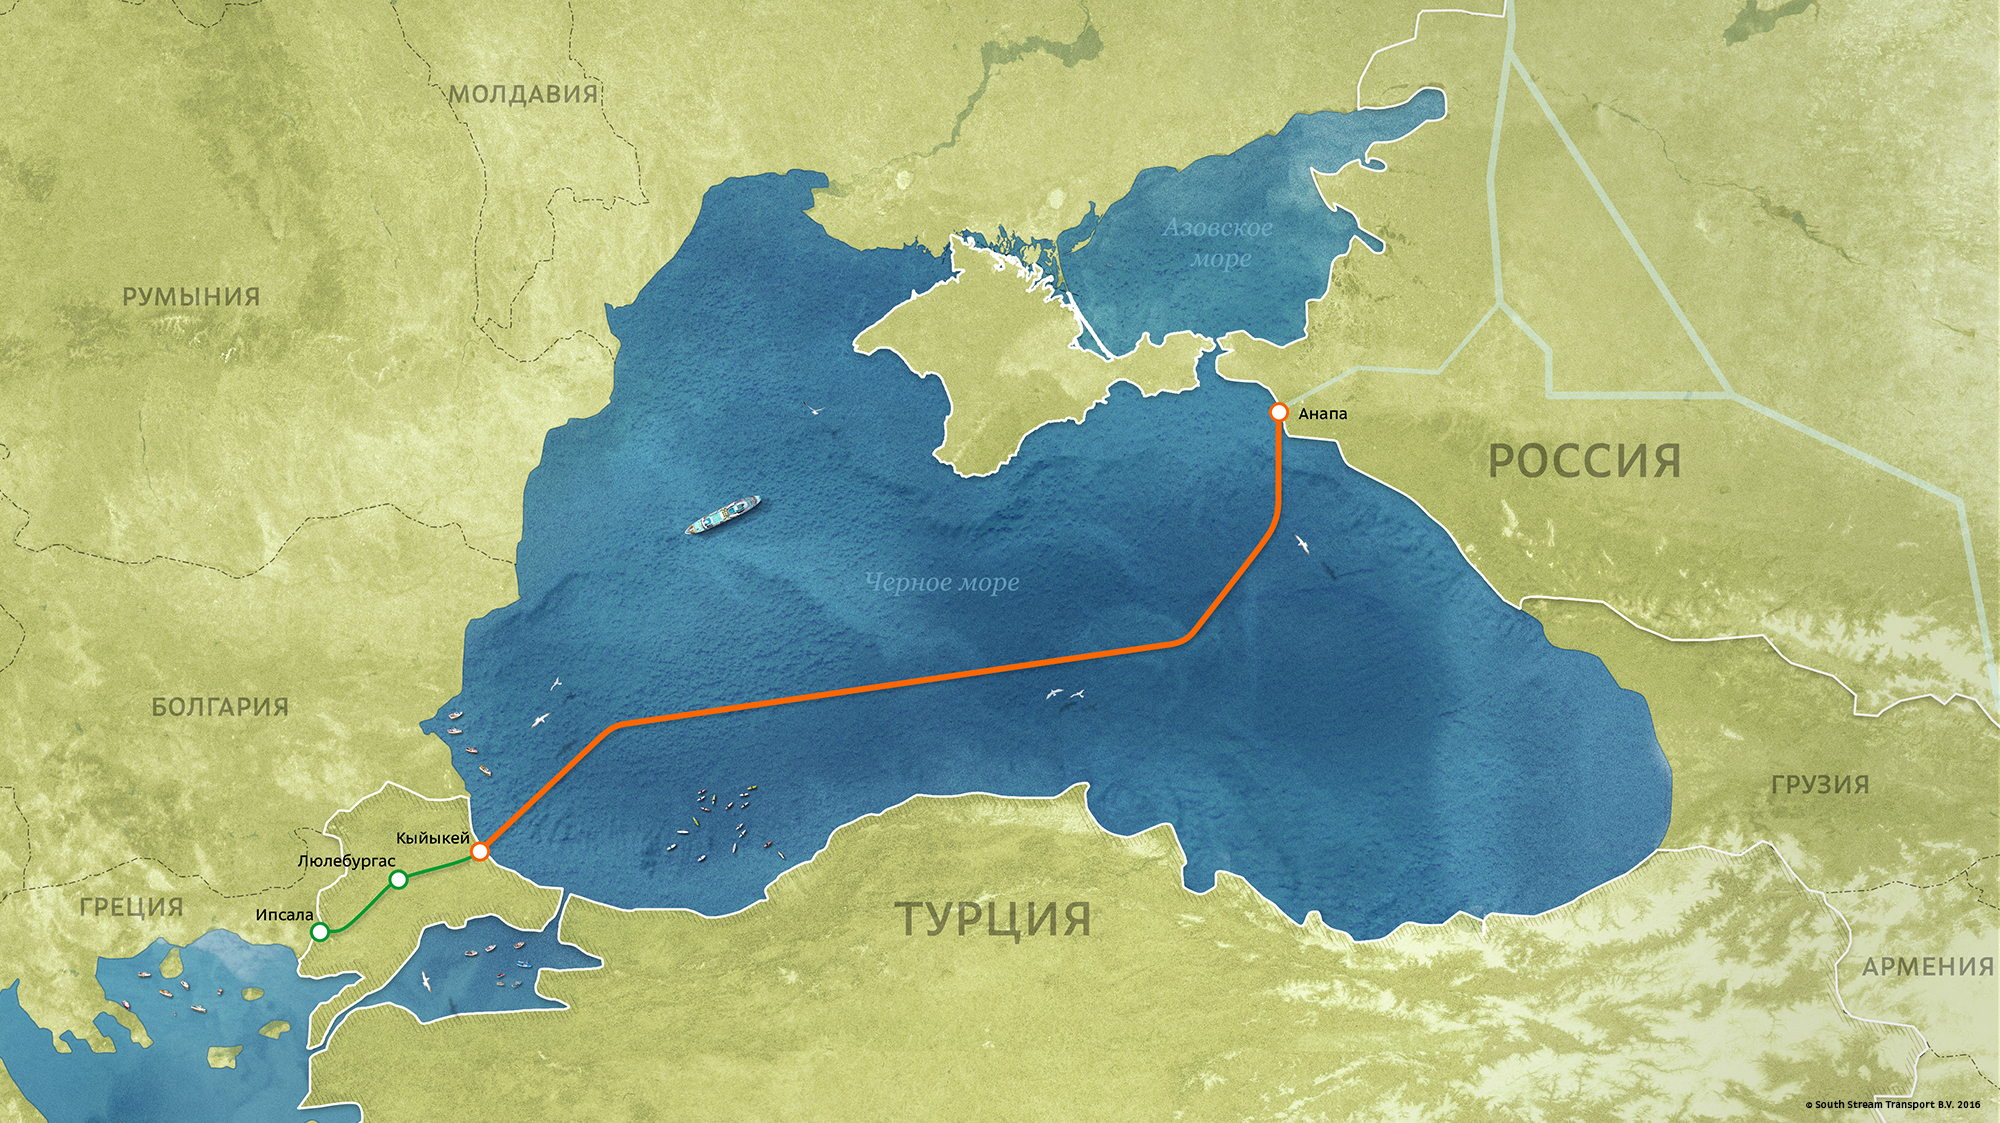 У Молдавии есть выход в чёрное море?